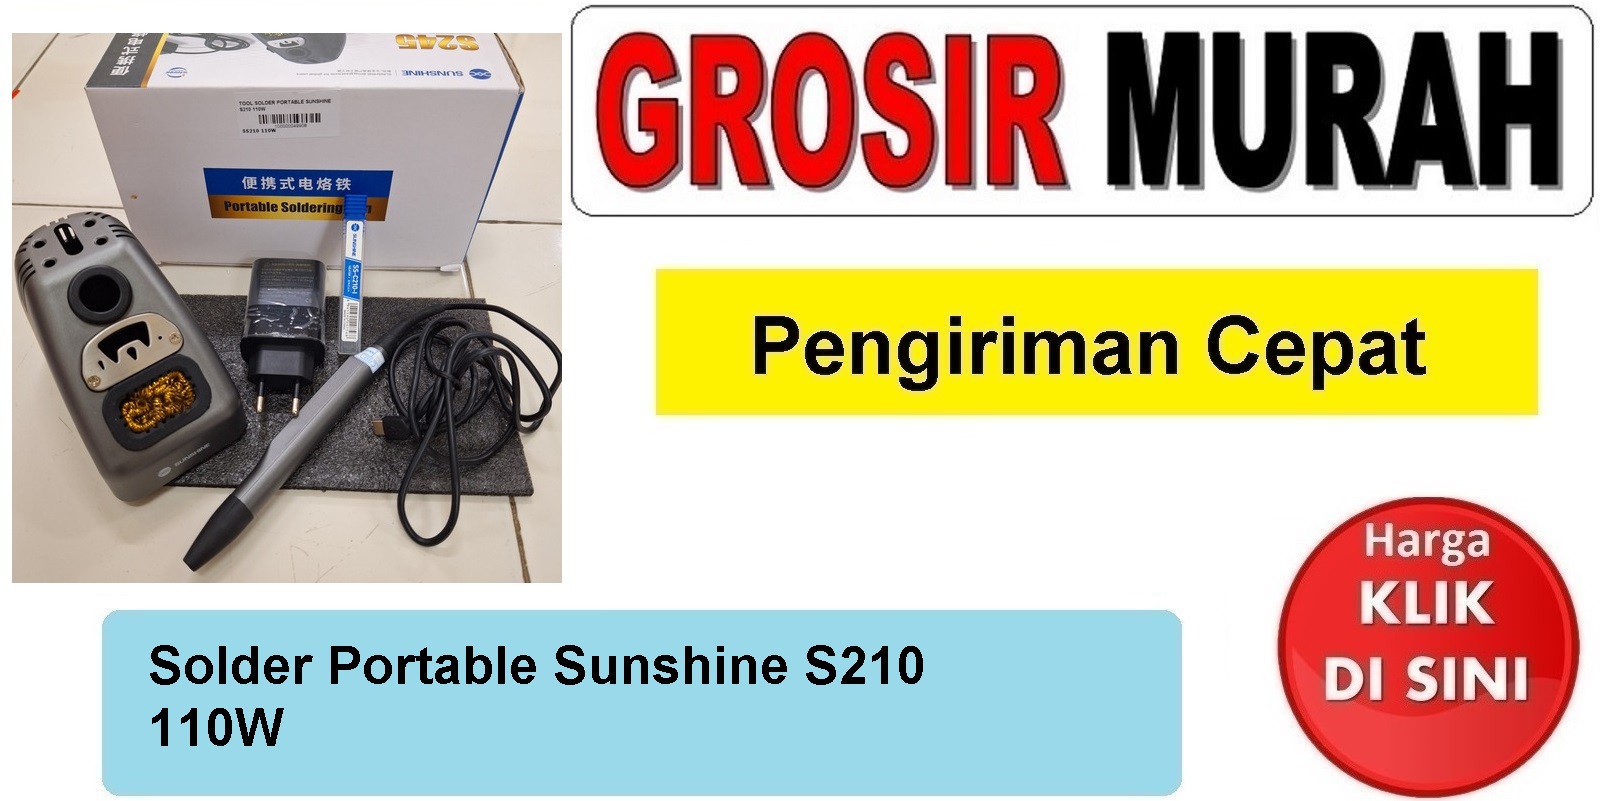 Solder Portable Sunshine S210 110W Perlengkapan Service Toolkit Alat Serpis teknisi Spare Part Hp Grosir